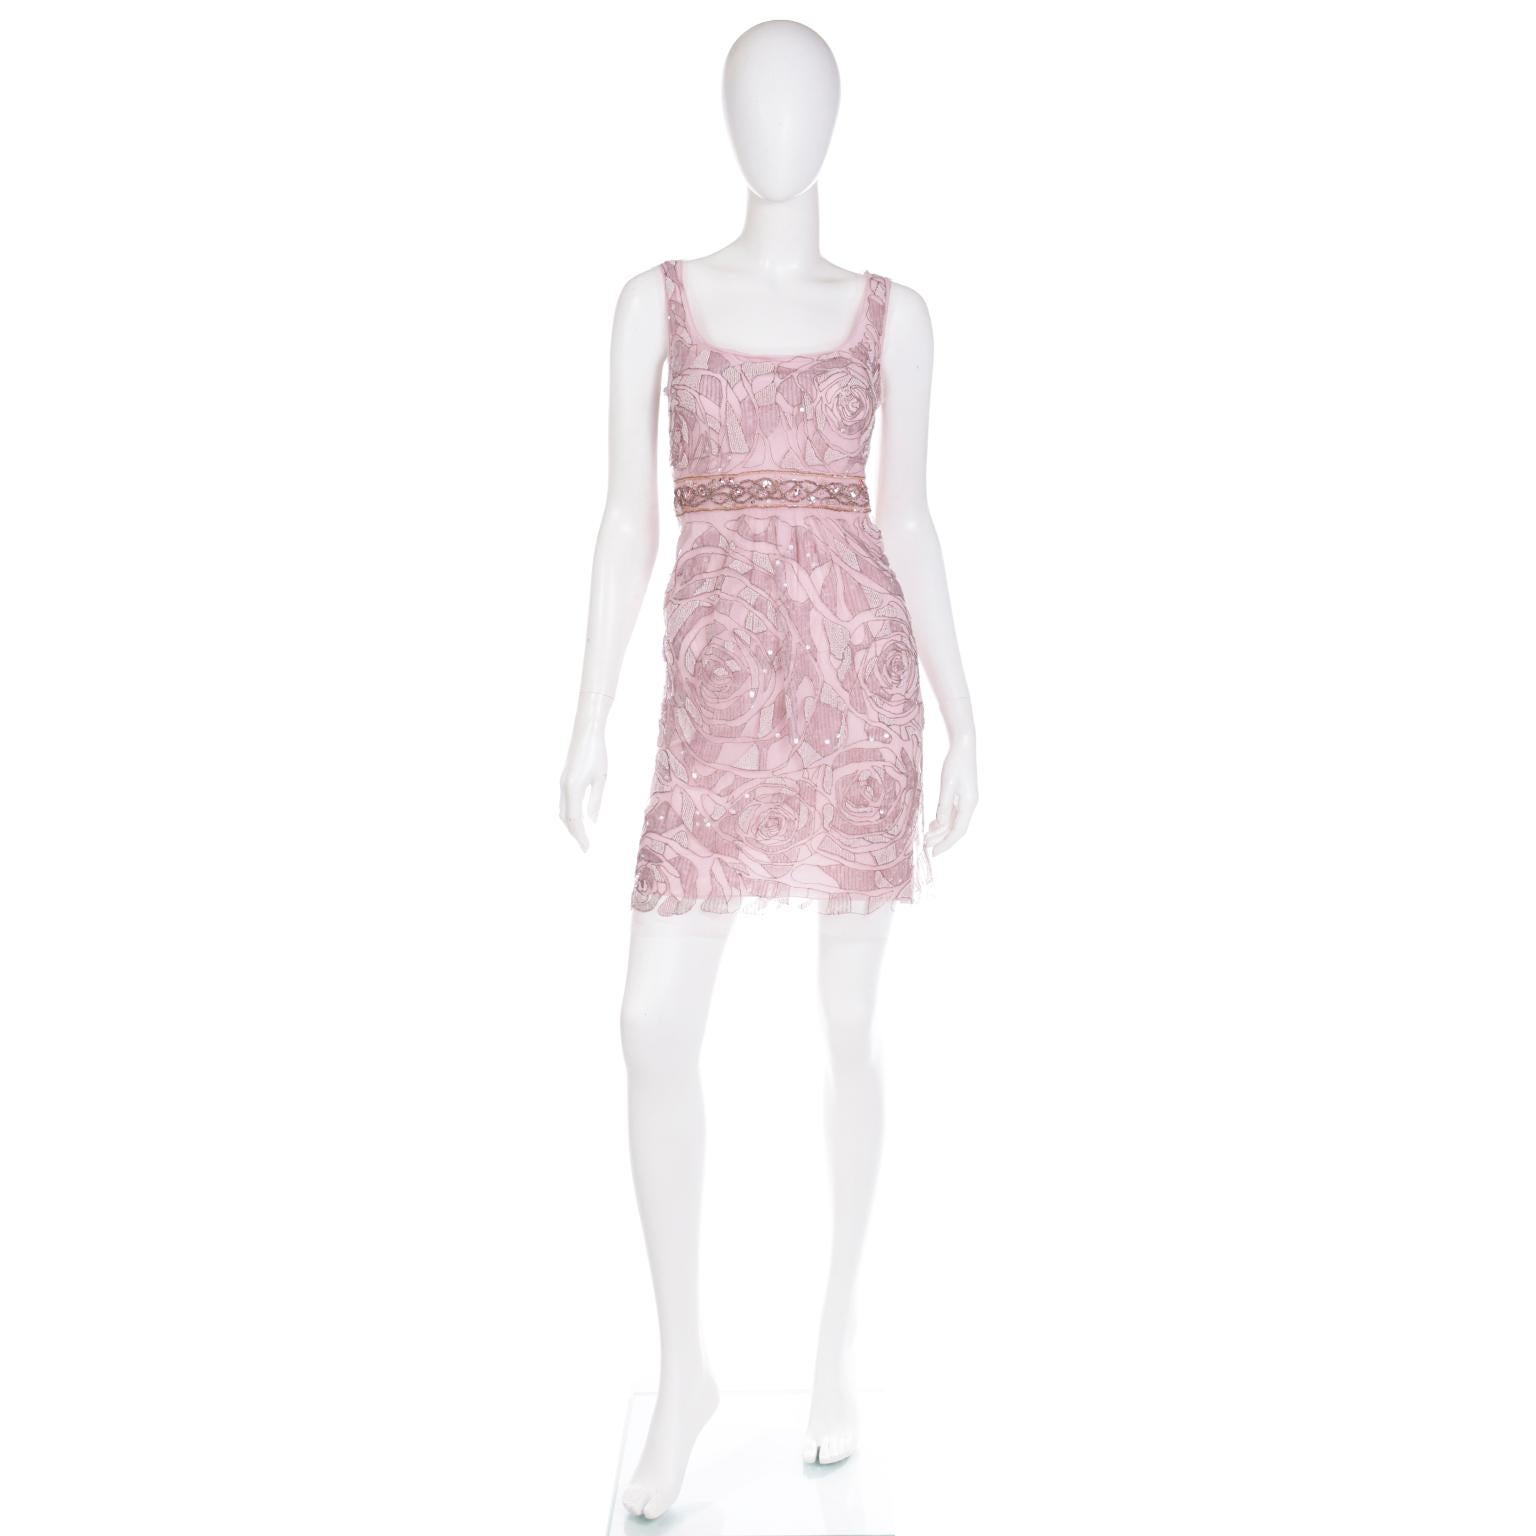 Cette jolie robe de soirée vintage Emanuel Ungaro ornée de perles est composée d'une robe de dessous rose 100 % soie et d'une délicate superposition en filet de nylon parfaitement embellie par des broderies métalliques, des perles et des paillettes